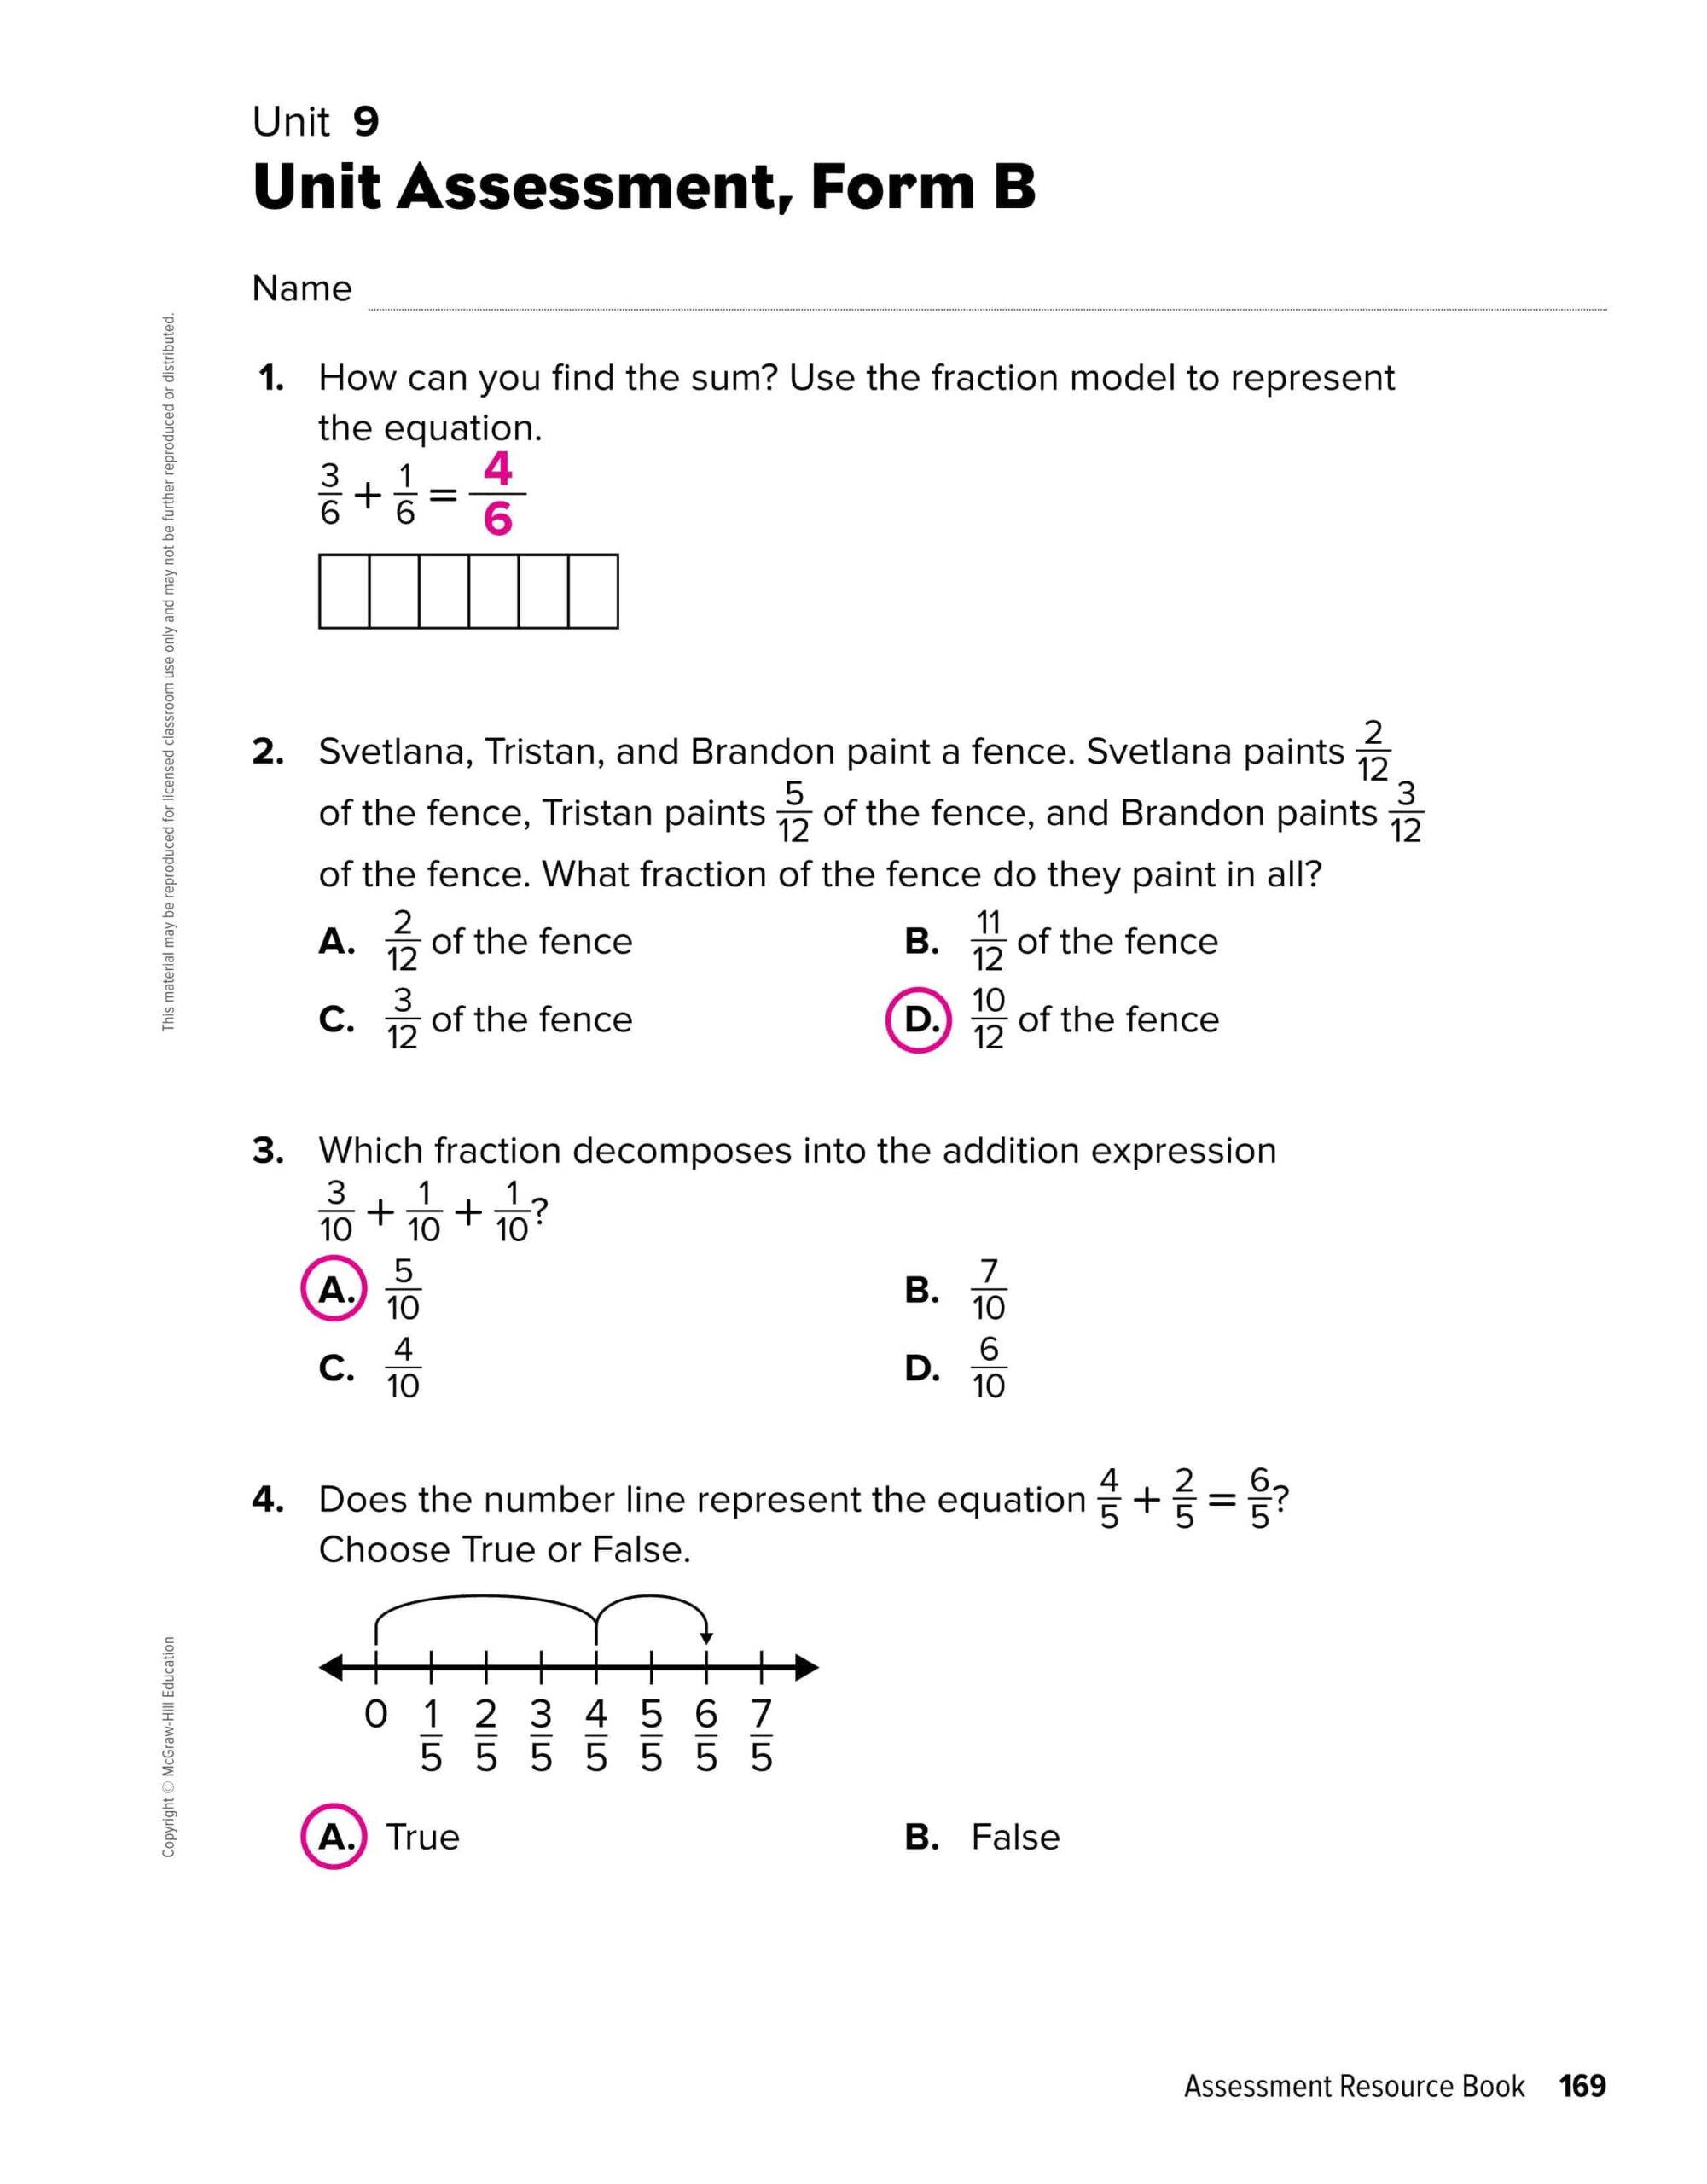 حل ورقة عمل الوحدة التاسعة بالإنجليزي الرياضيات المتكاملة الصف الرابع